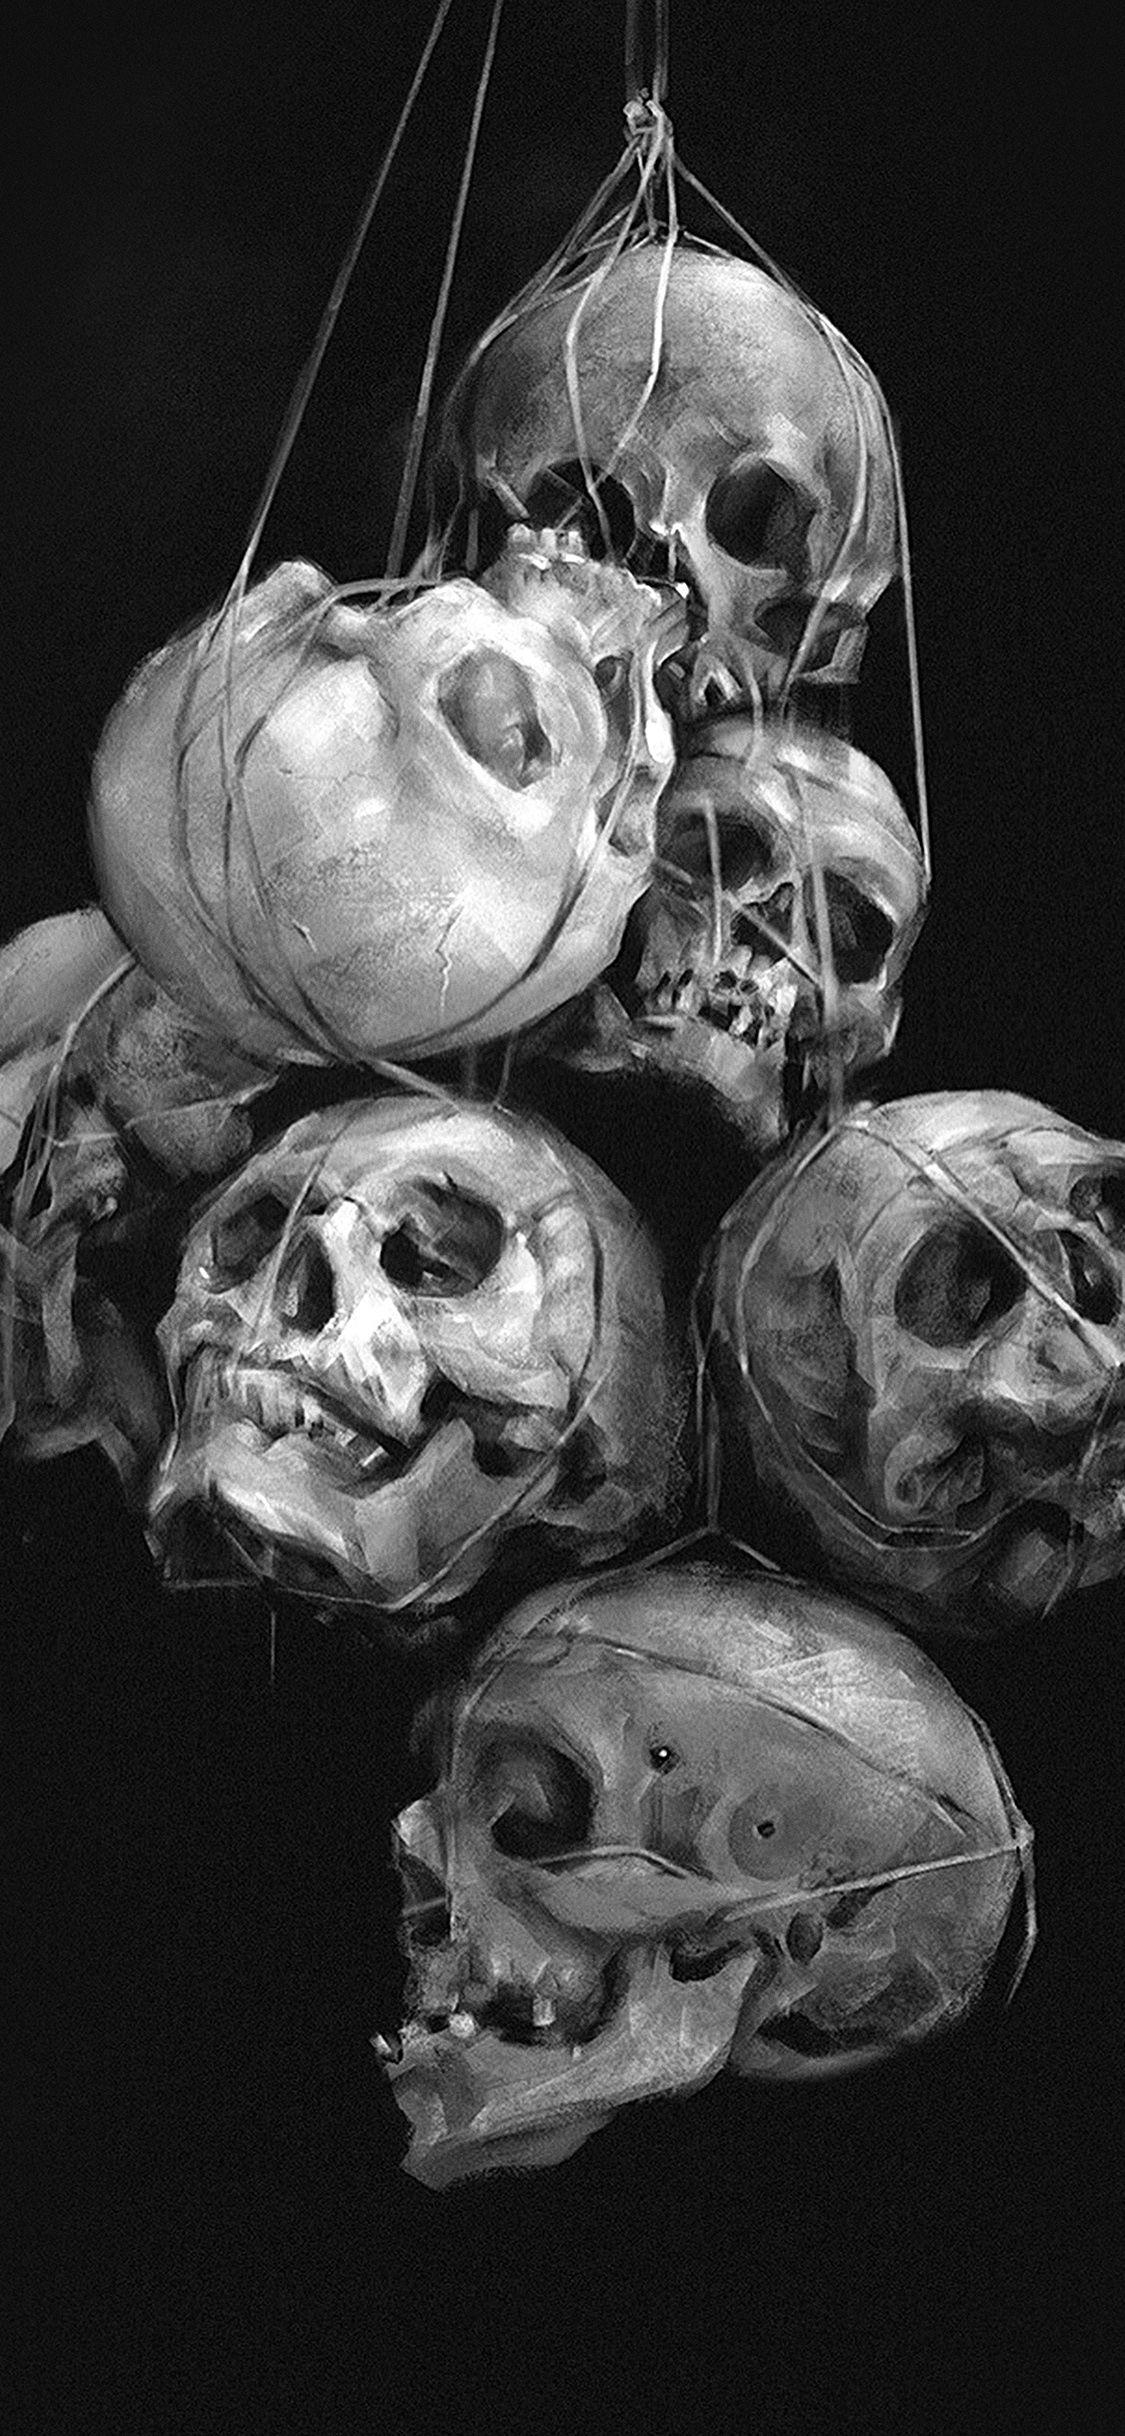 3D Skull Phone Screensaver Wallpapers - Wallpaper Cave